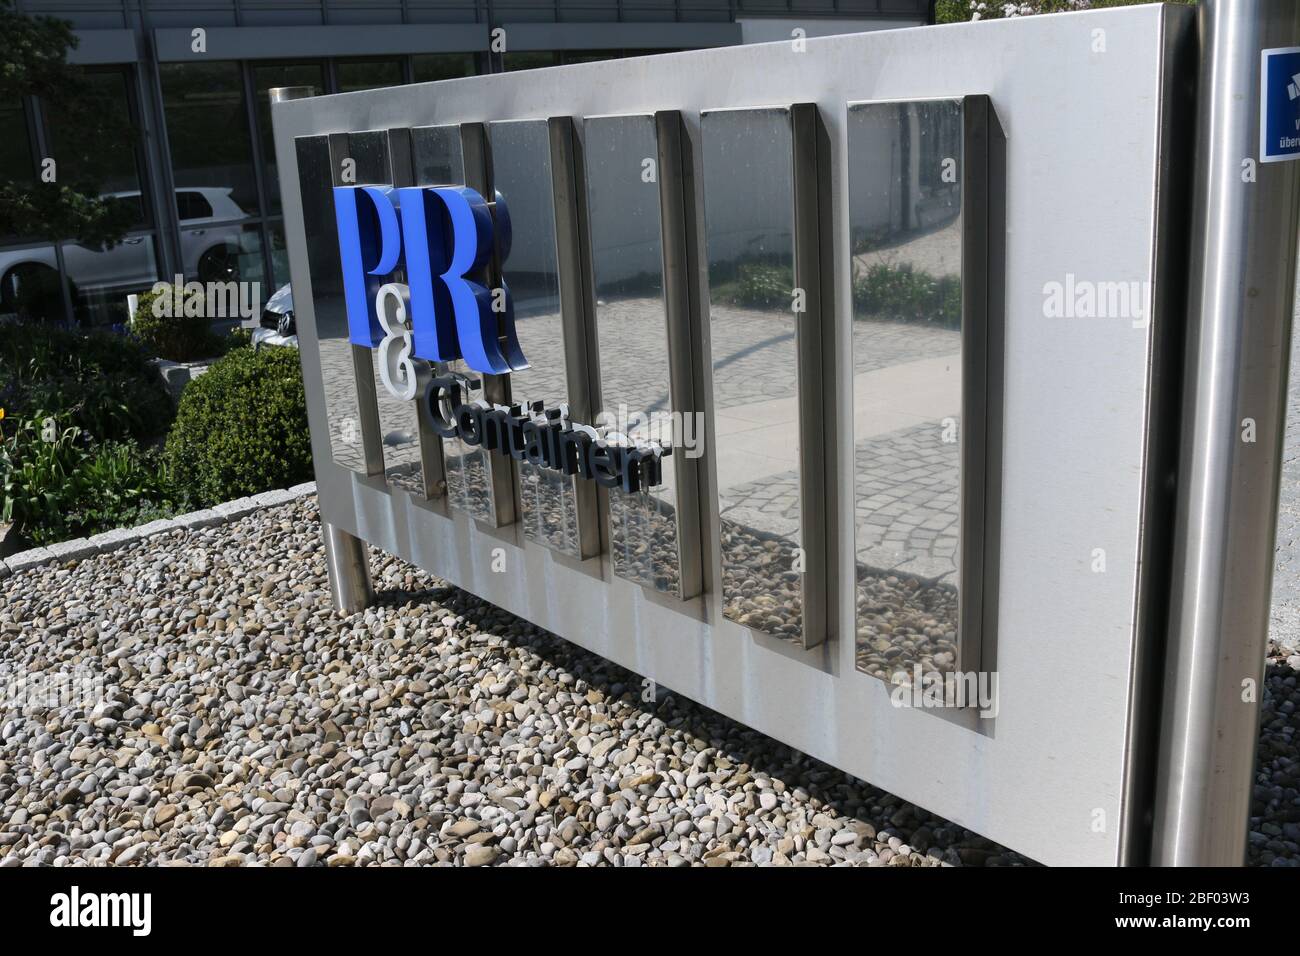 P & R Container Vertriebs u. Verwaltungs-GmbH, Grünwald Stock Photo